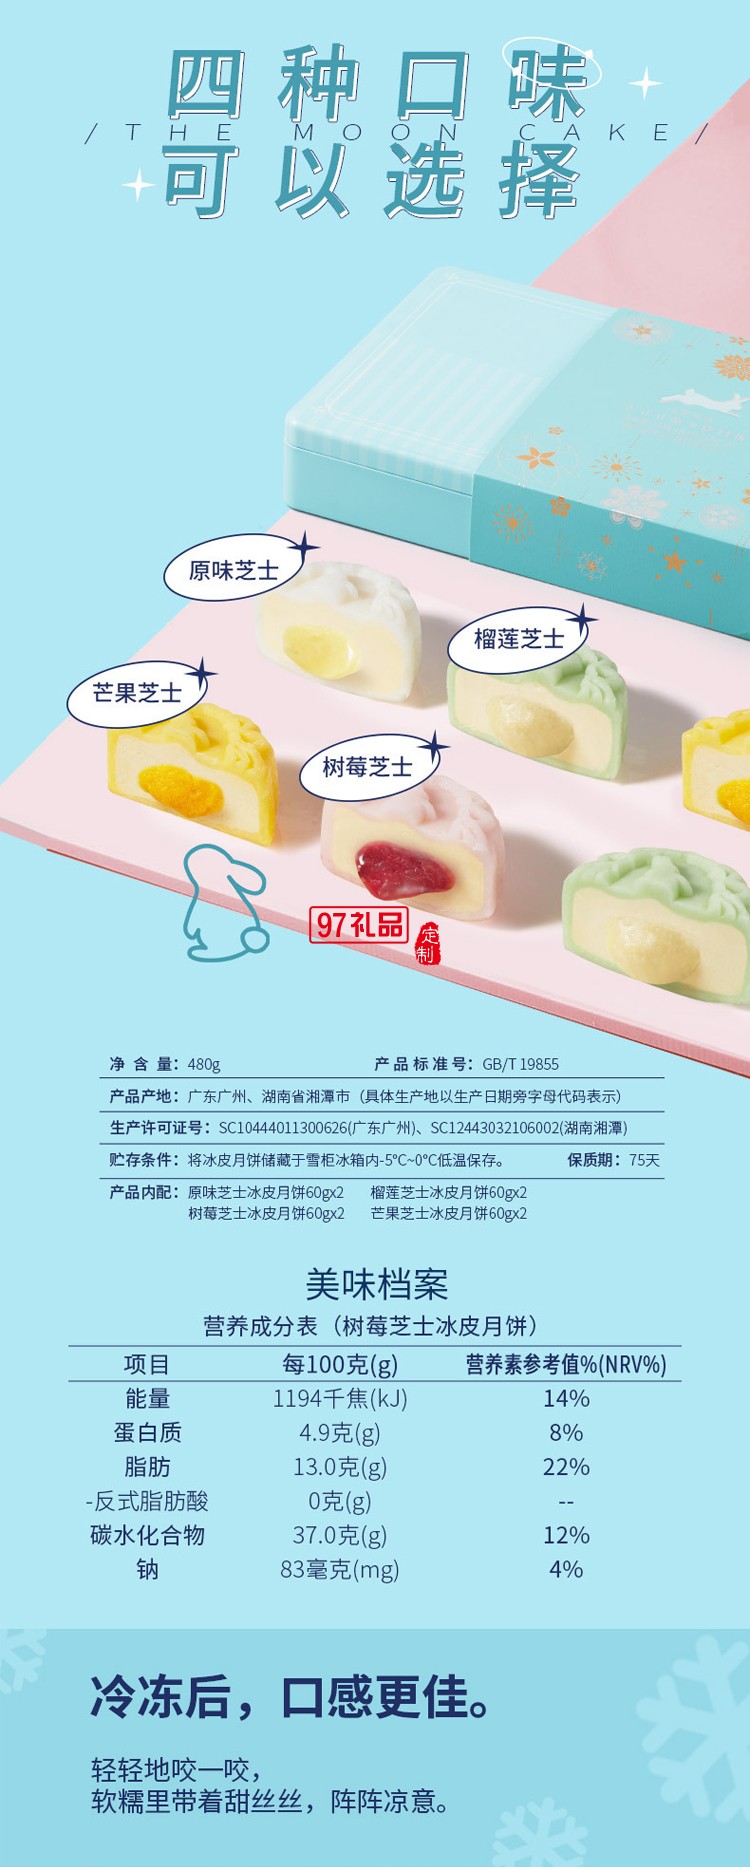 广州酒家 冰梦情缘法式乳酪冰皮月饼